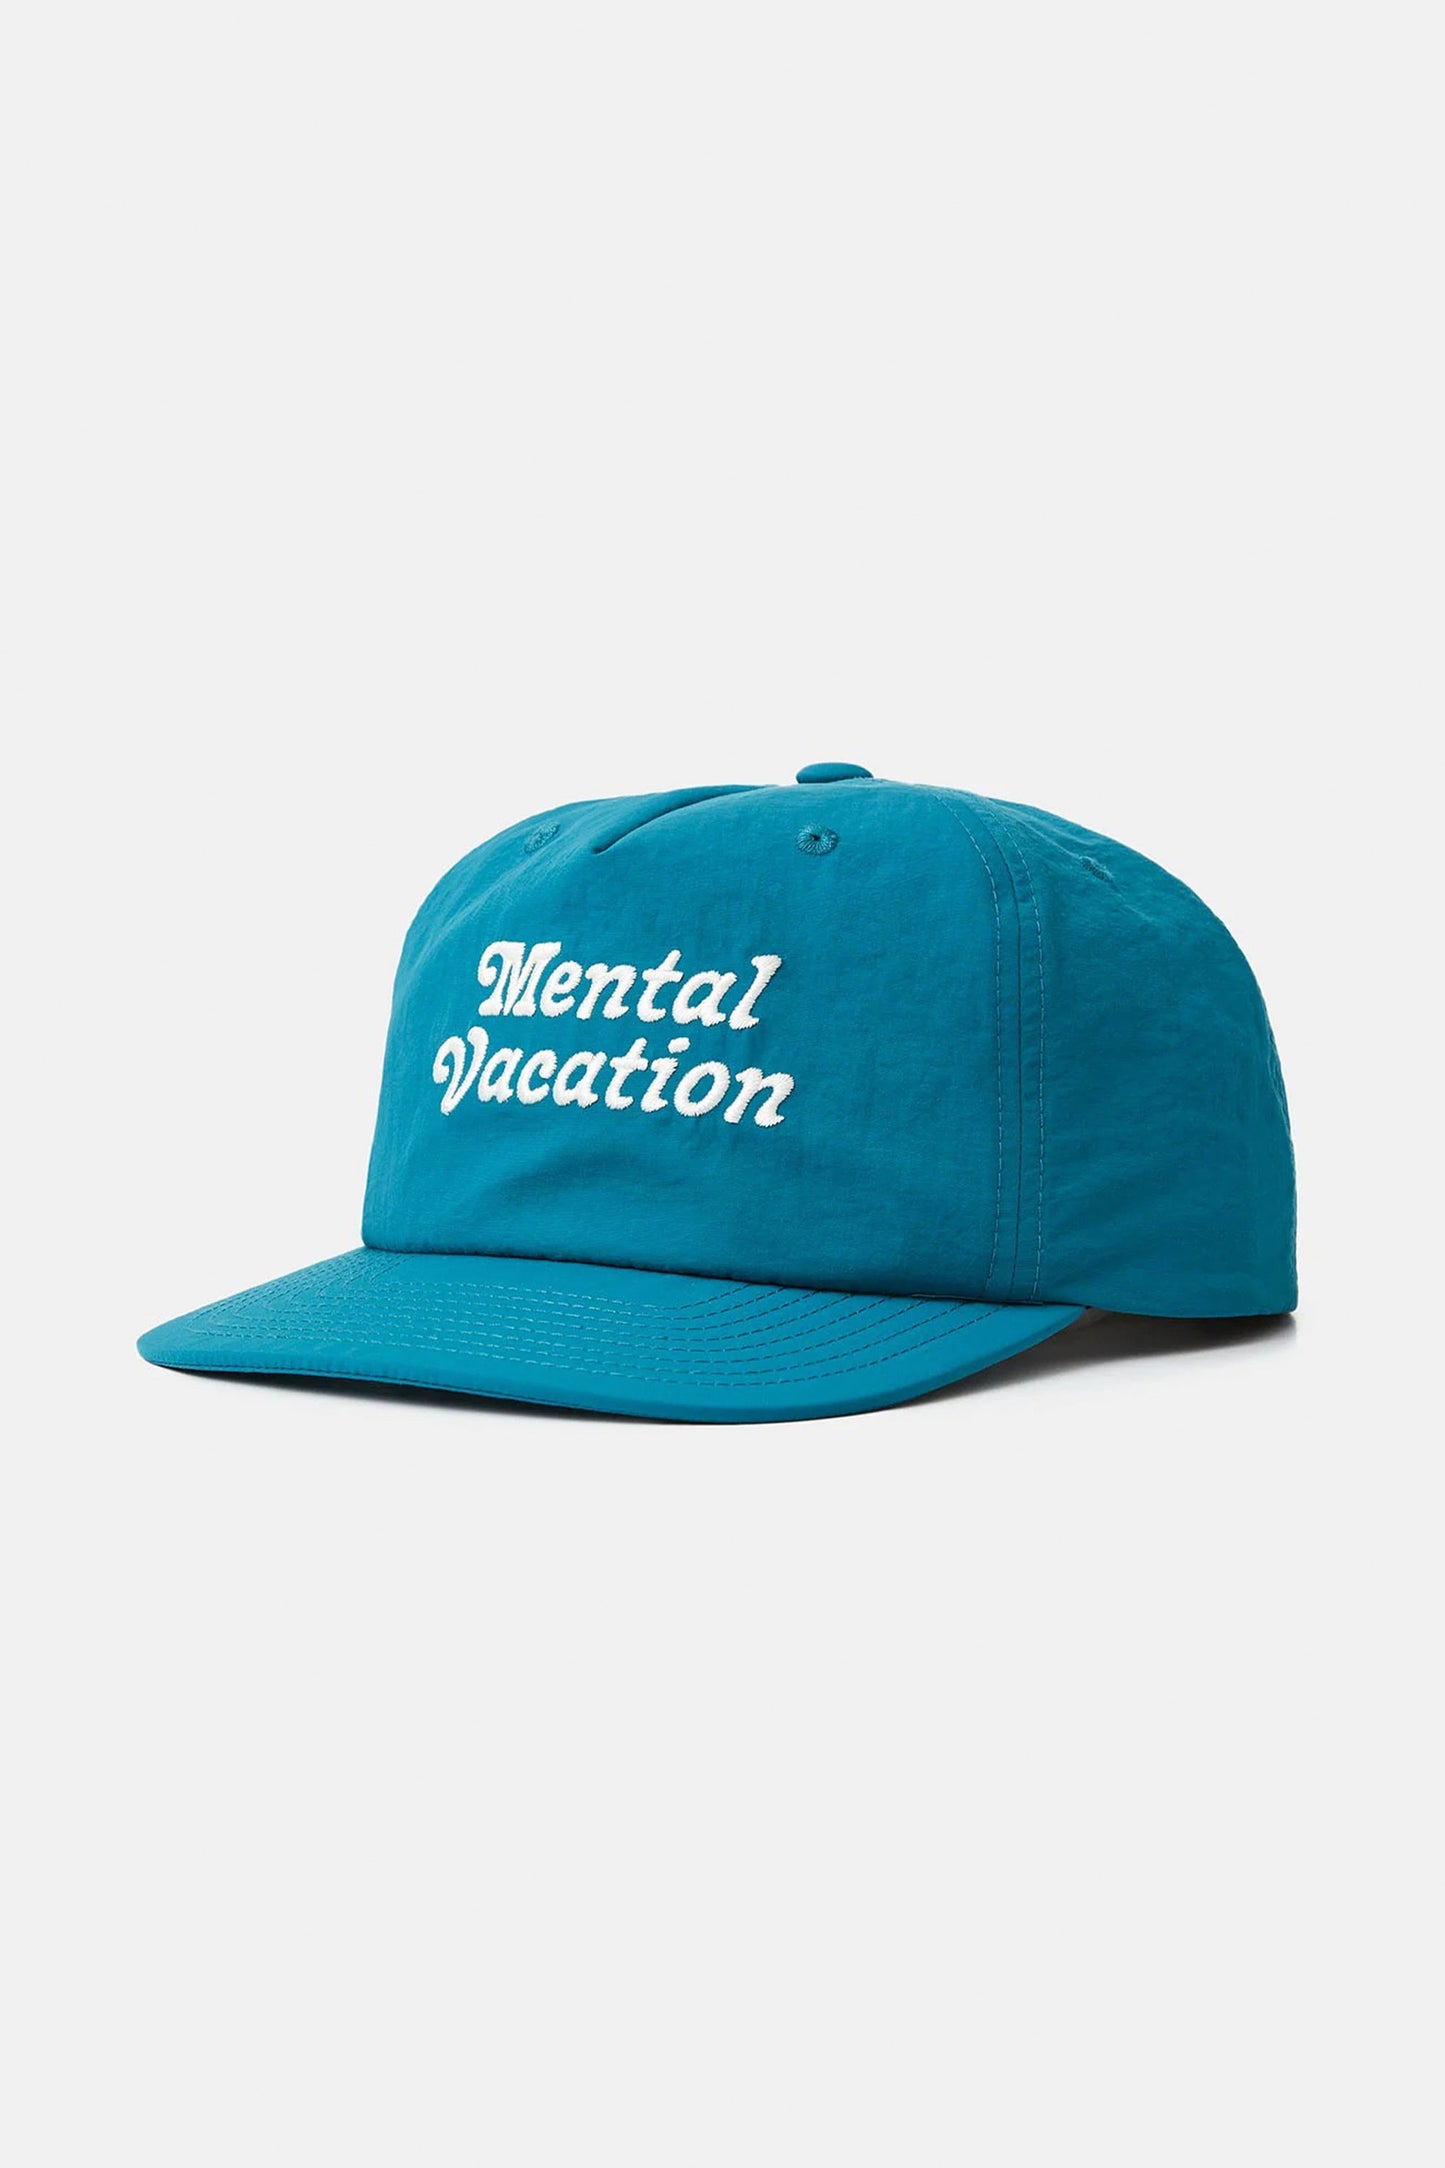 Pukas-Surf-Shop-Katin-Mental-Vacation-blue-green